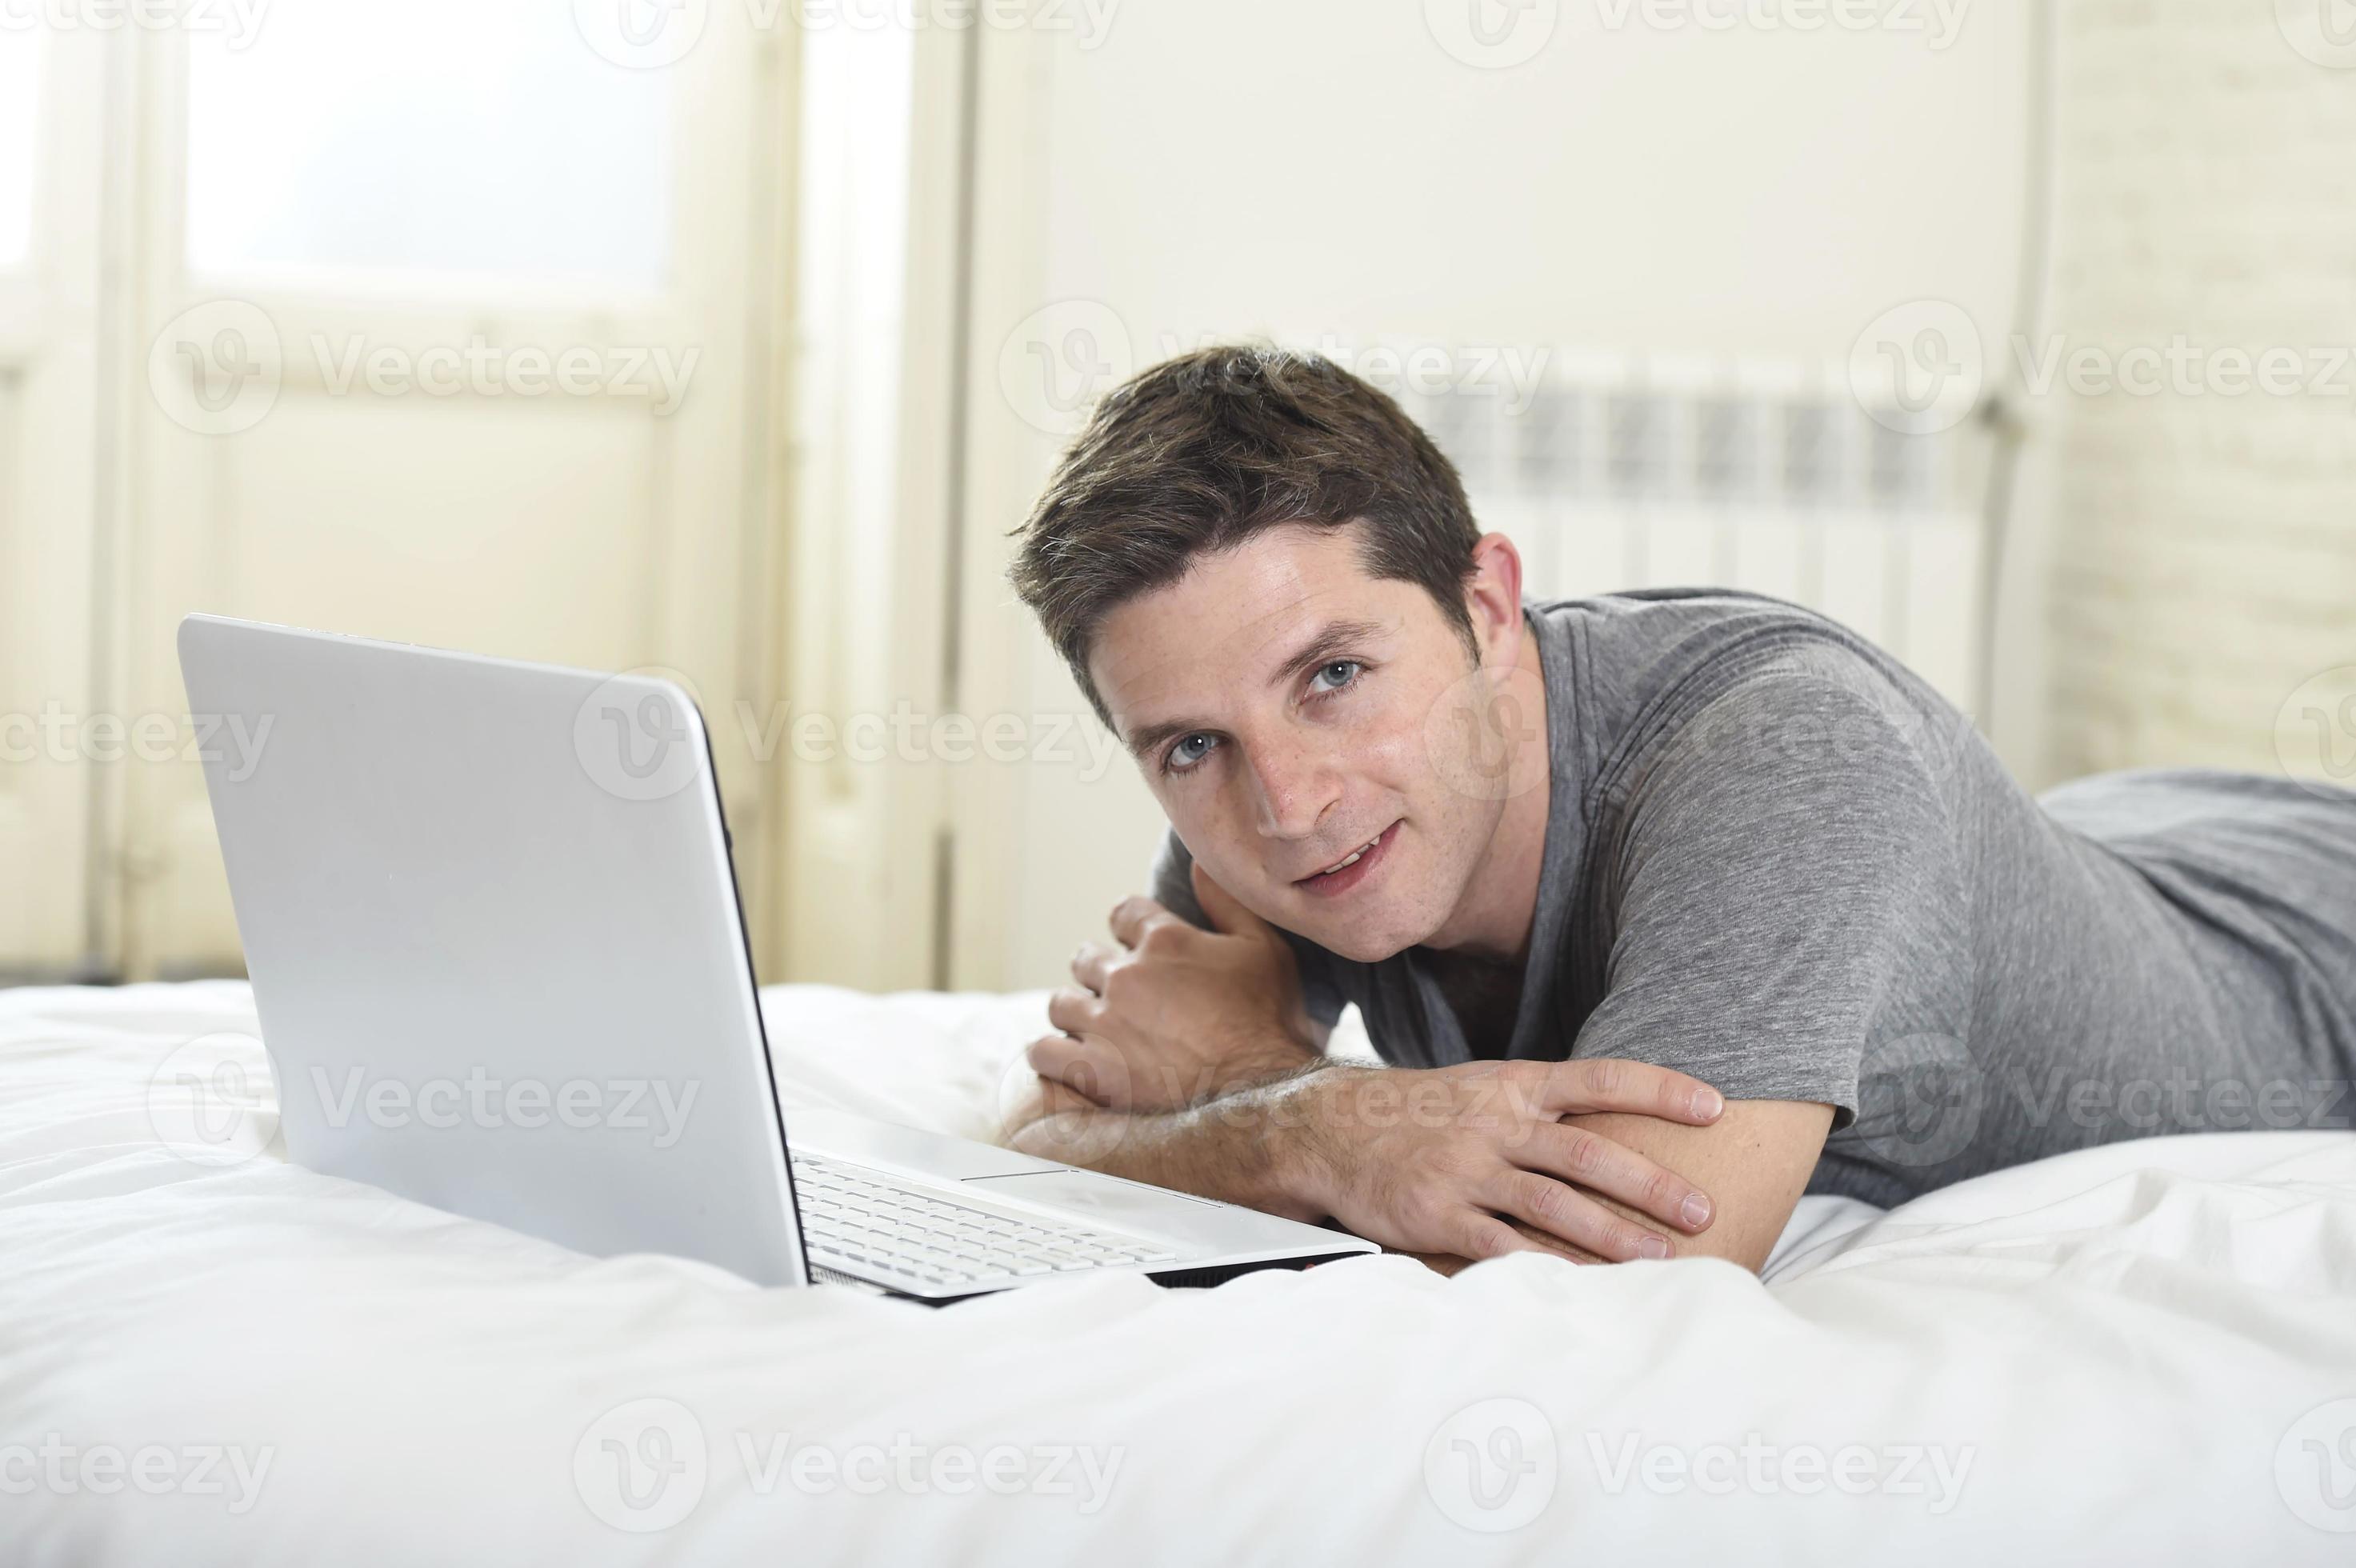 jovem atraente, deitada na cama, desfrutando de computador de rede social foto